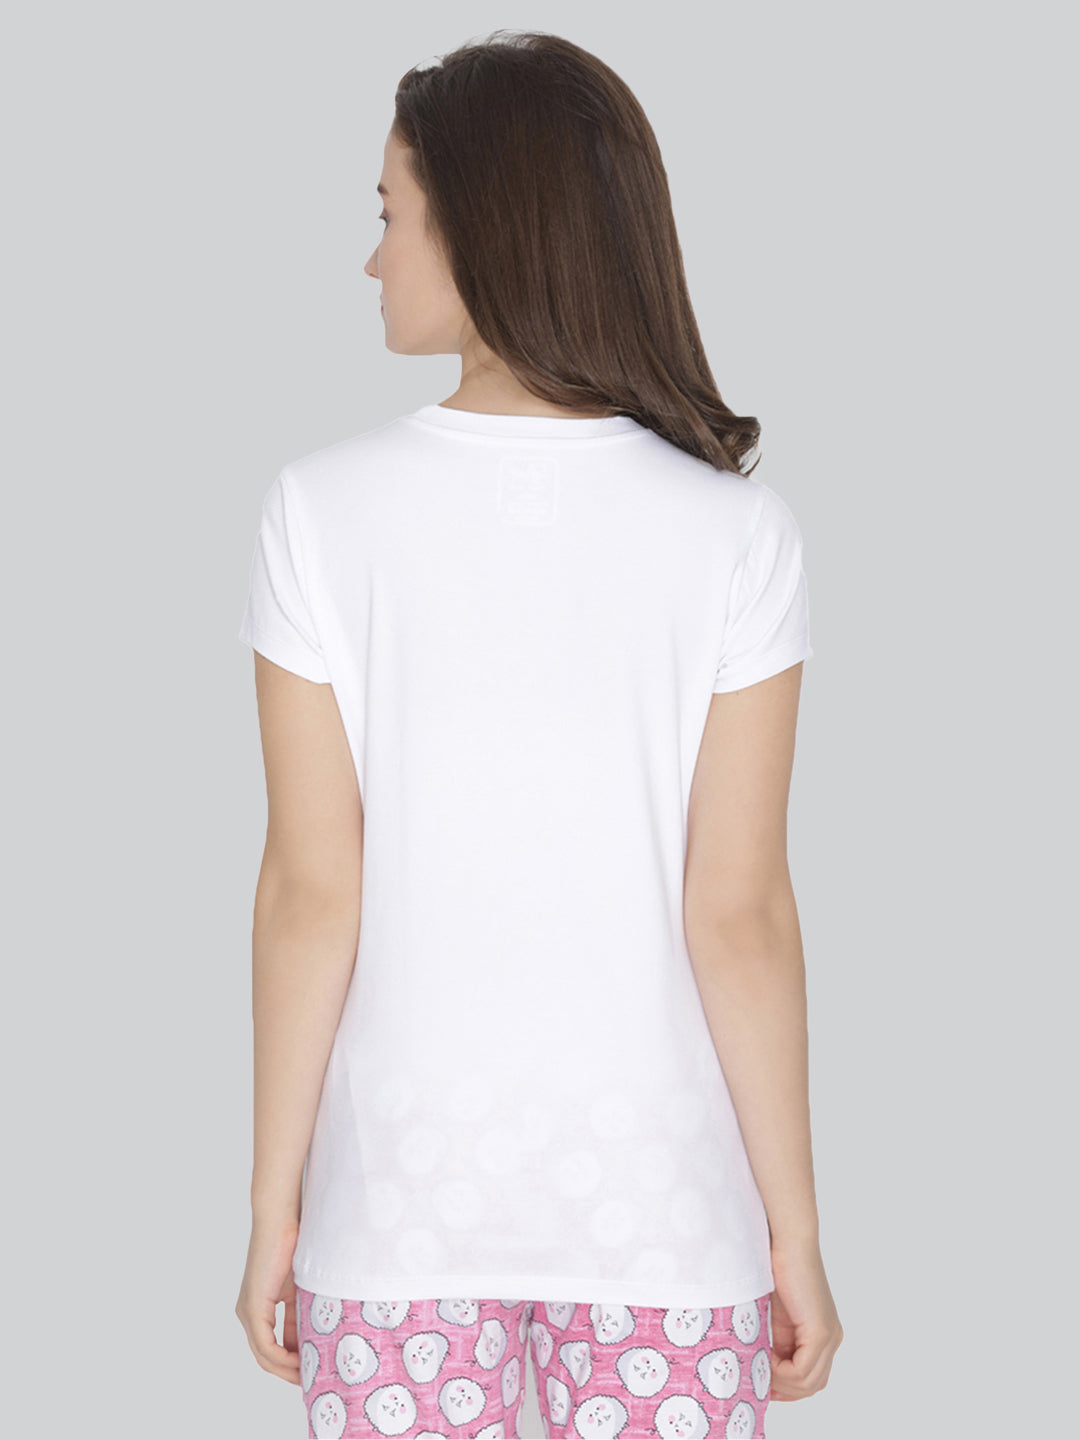 white round neck cotton t shirt for women